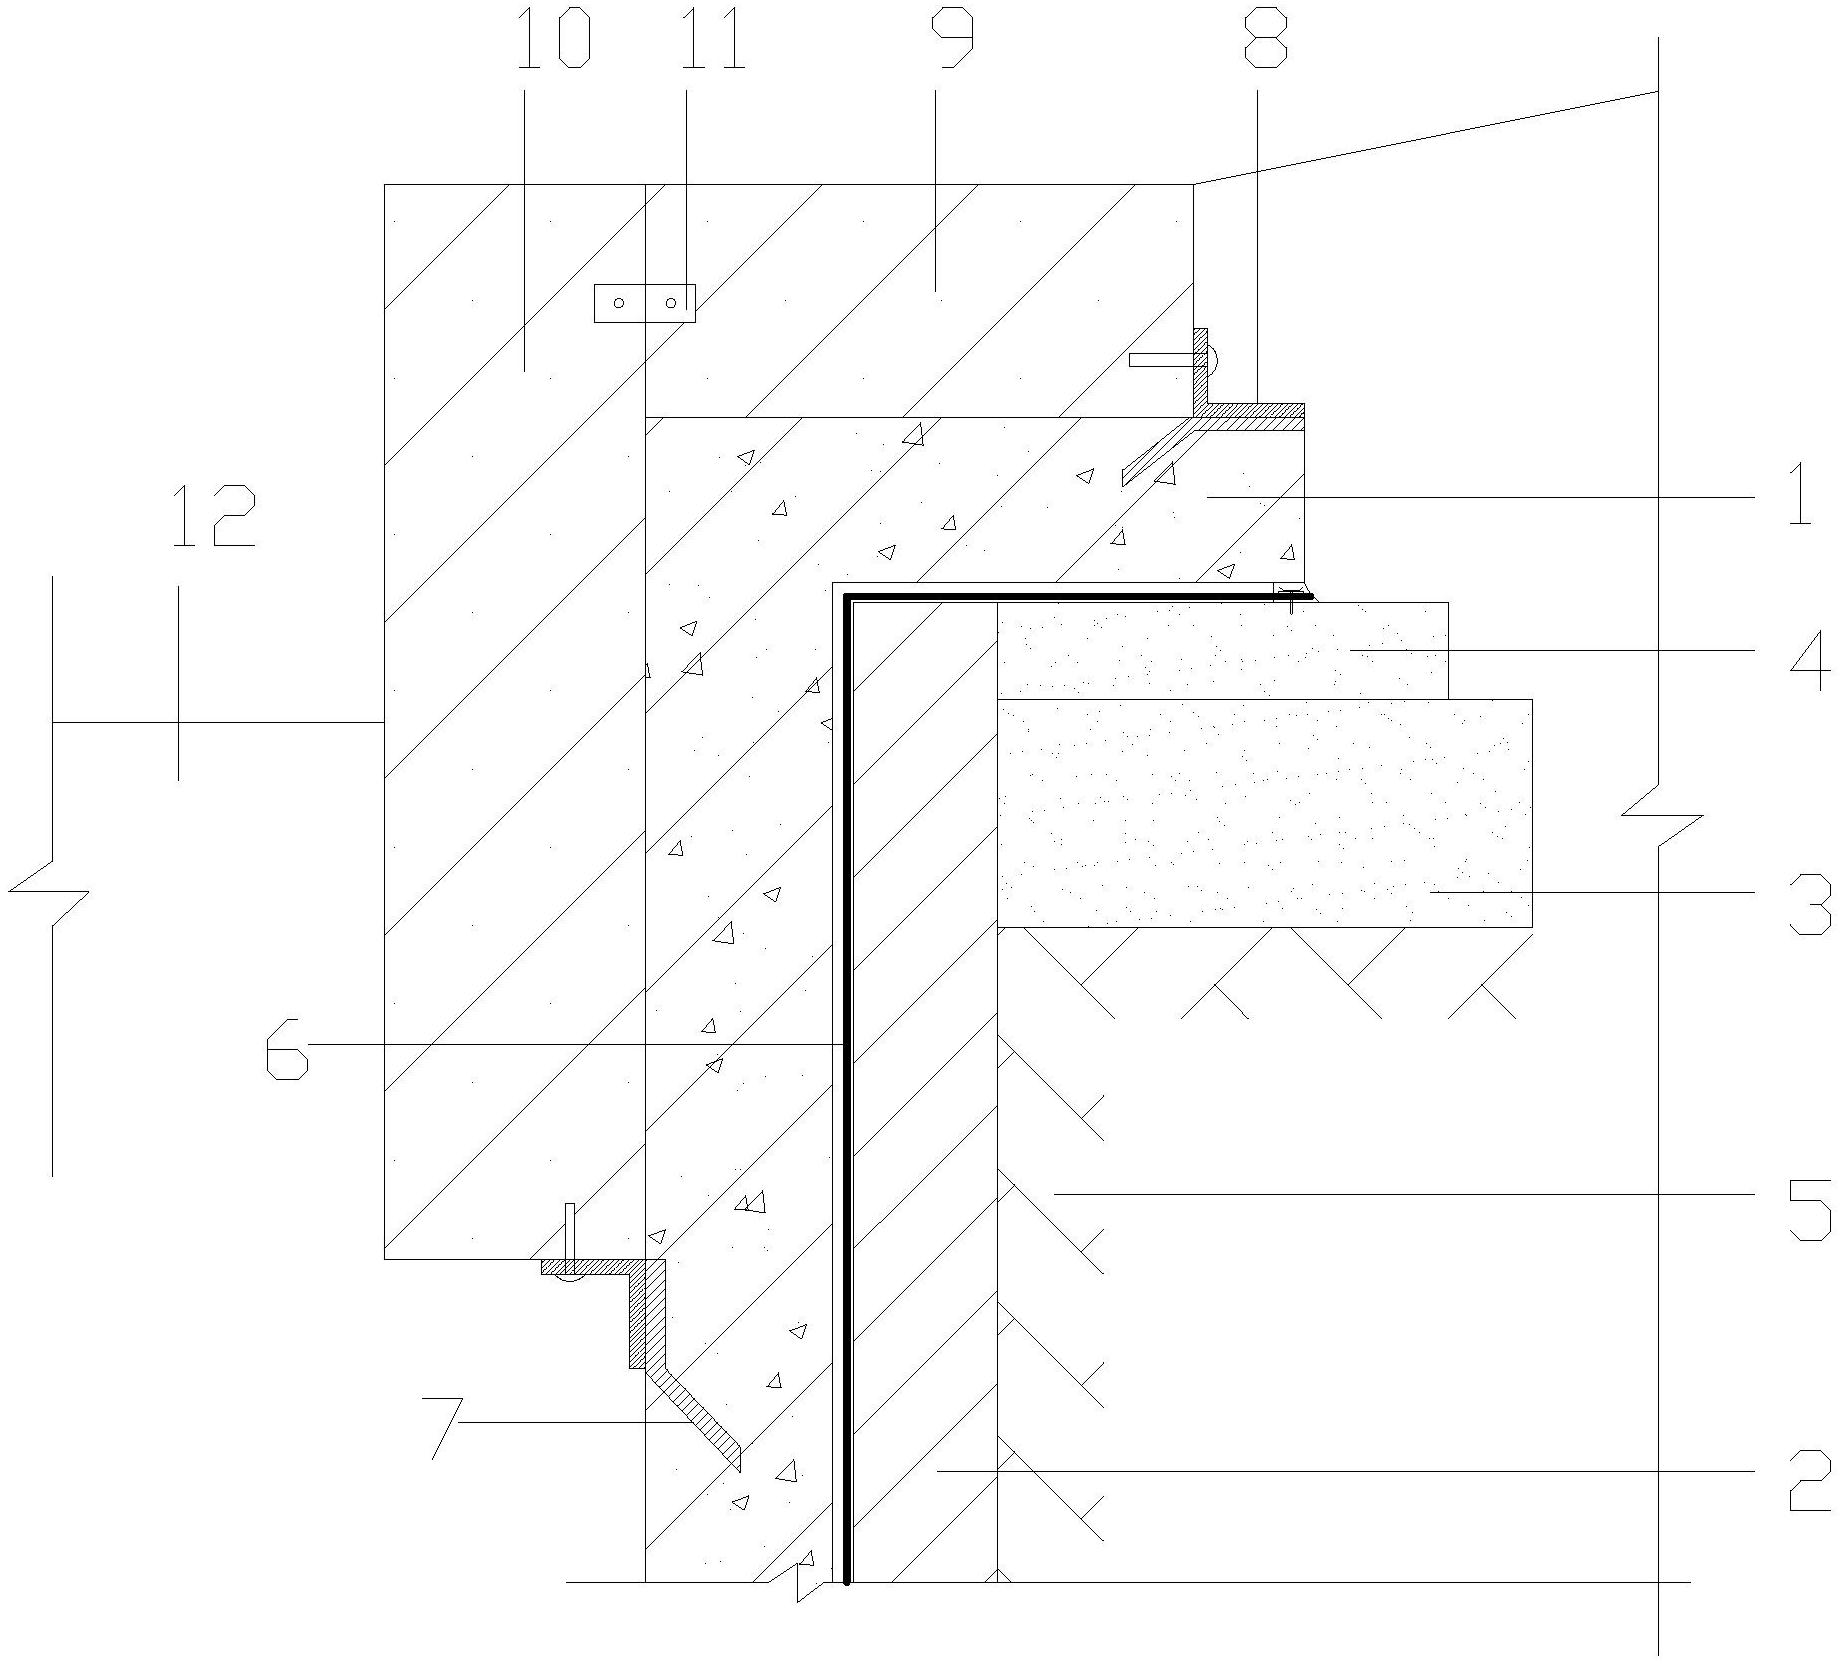 一种木饰驳岸连接结构专利图